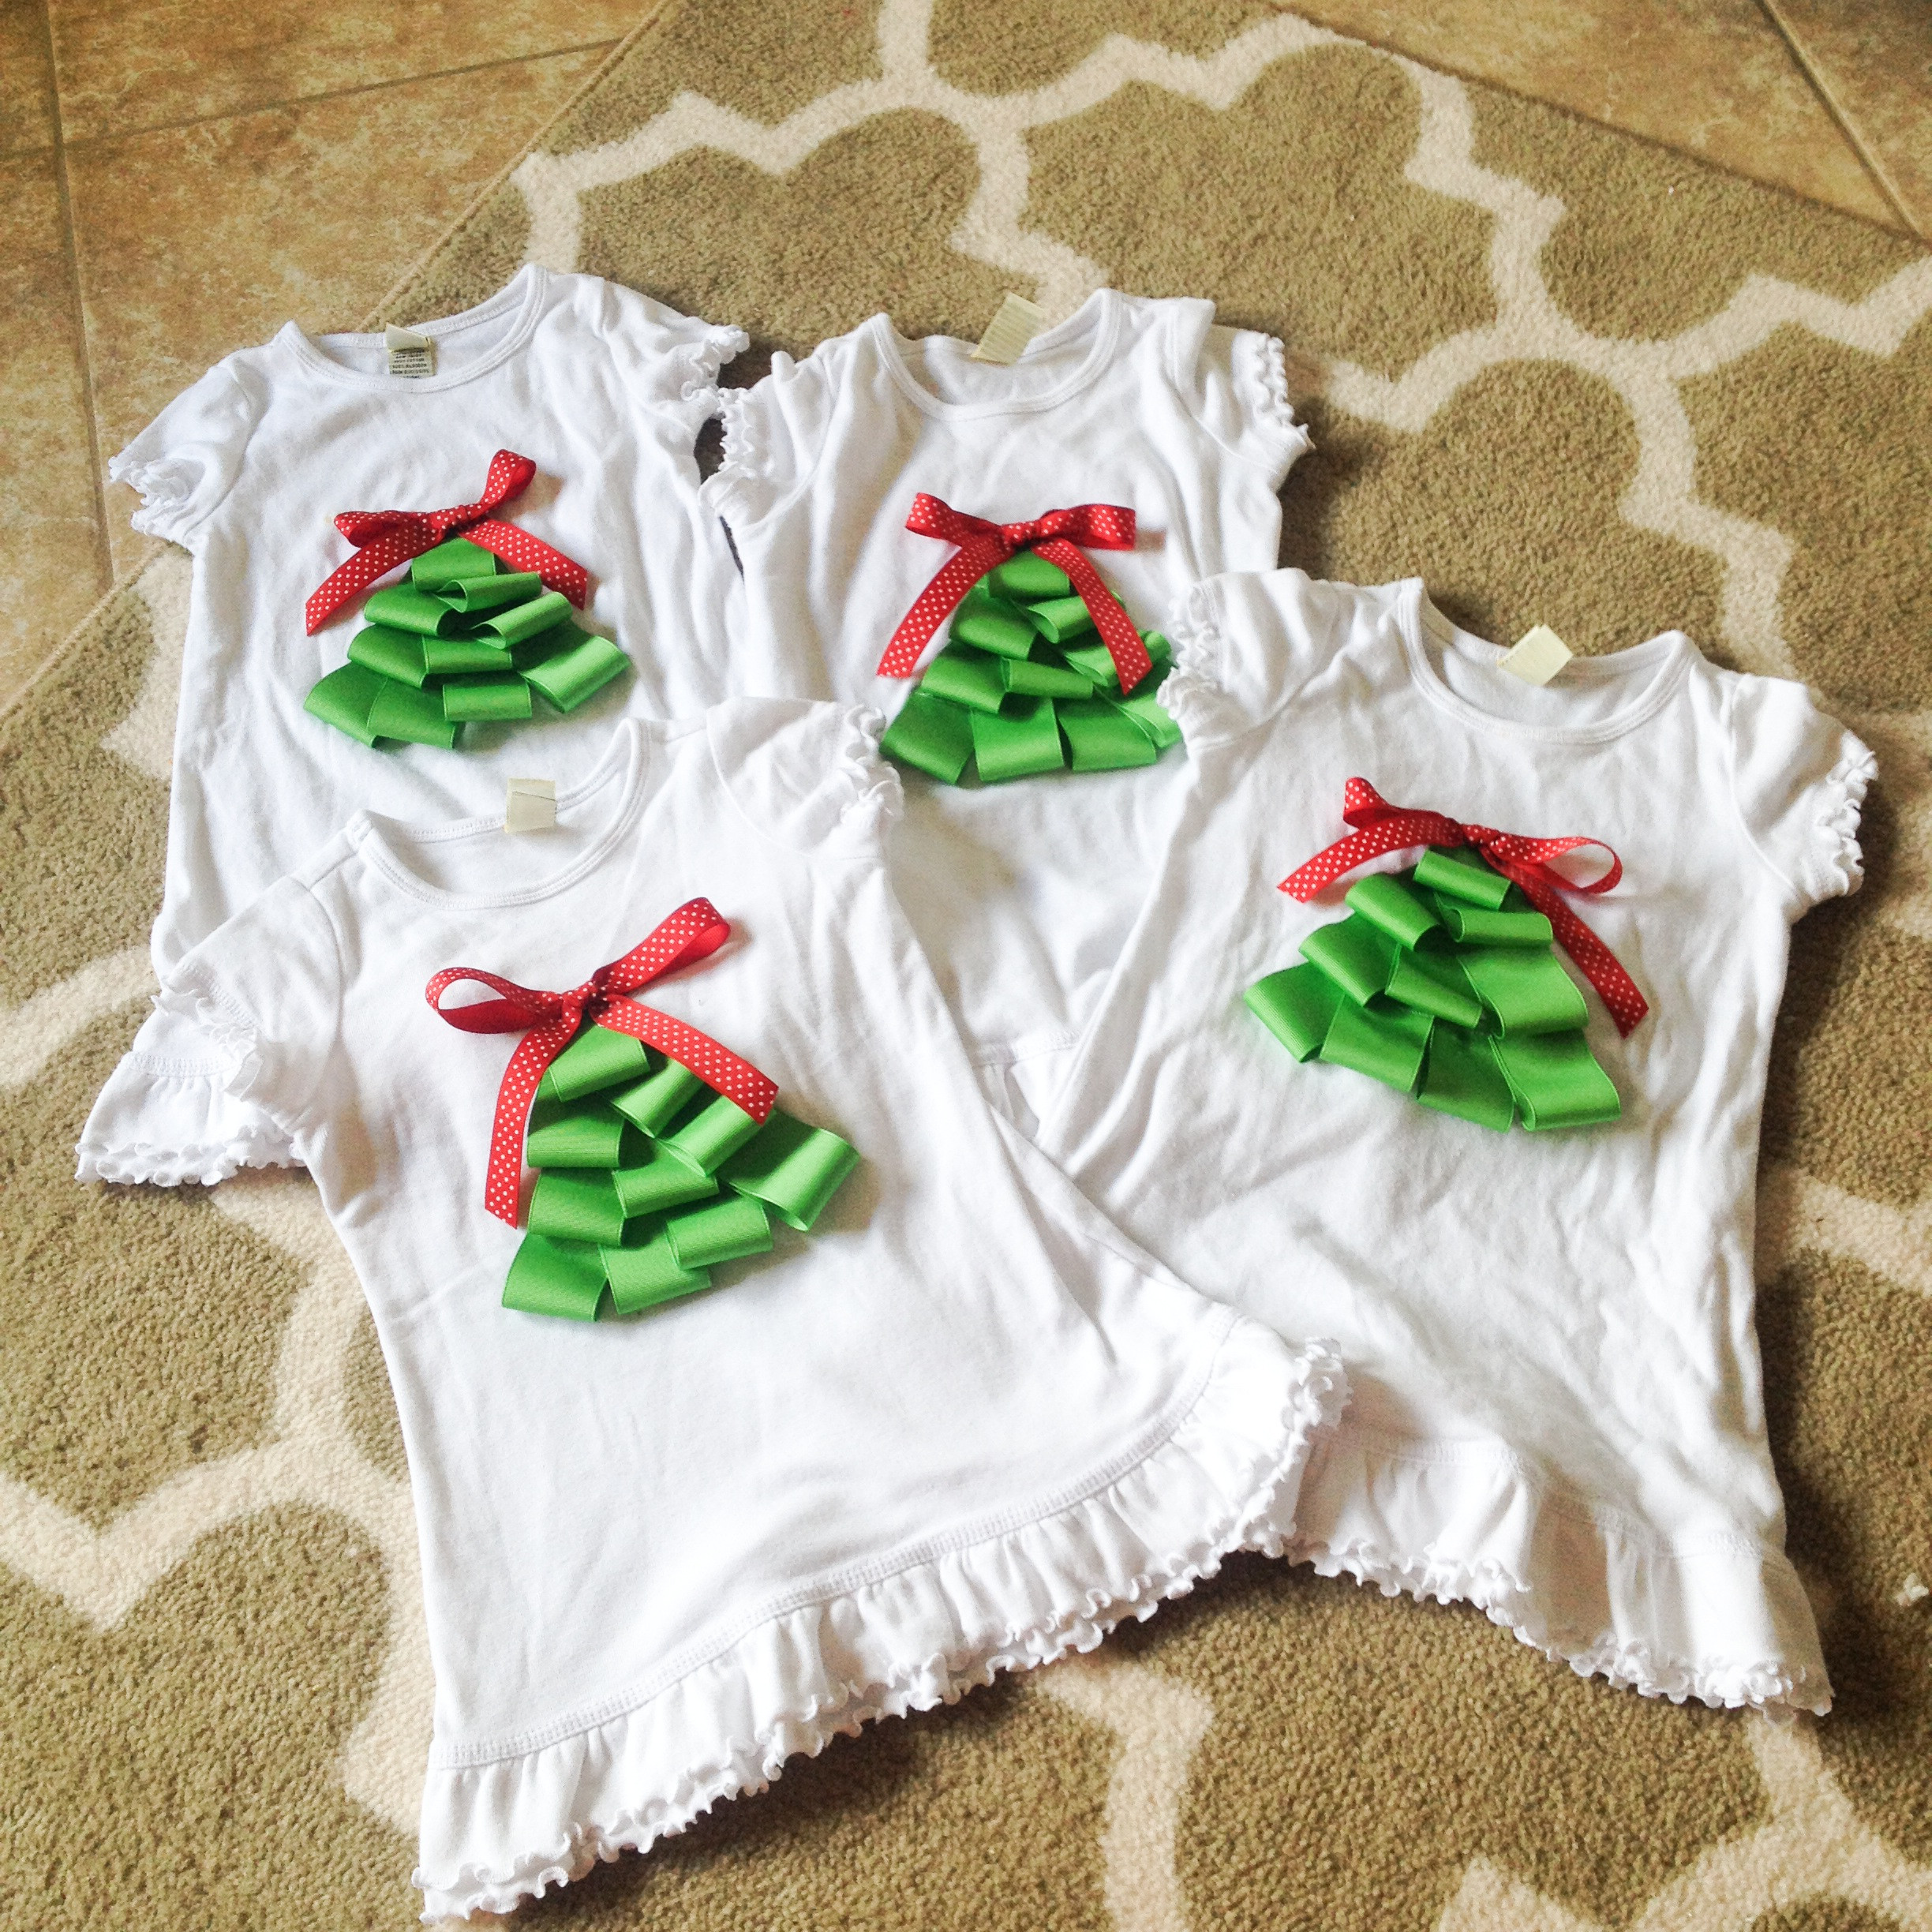 DIY Christmas Shirts
 DIY Christmas Tree Shirts